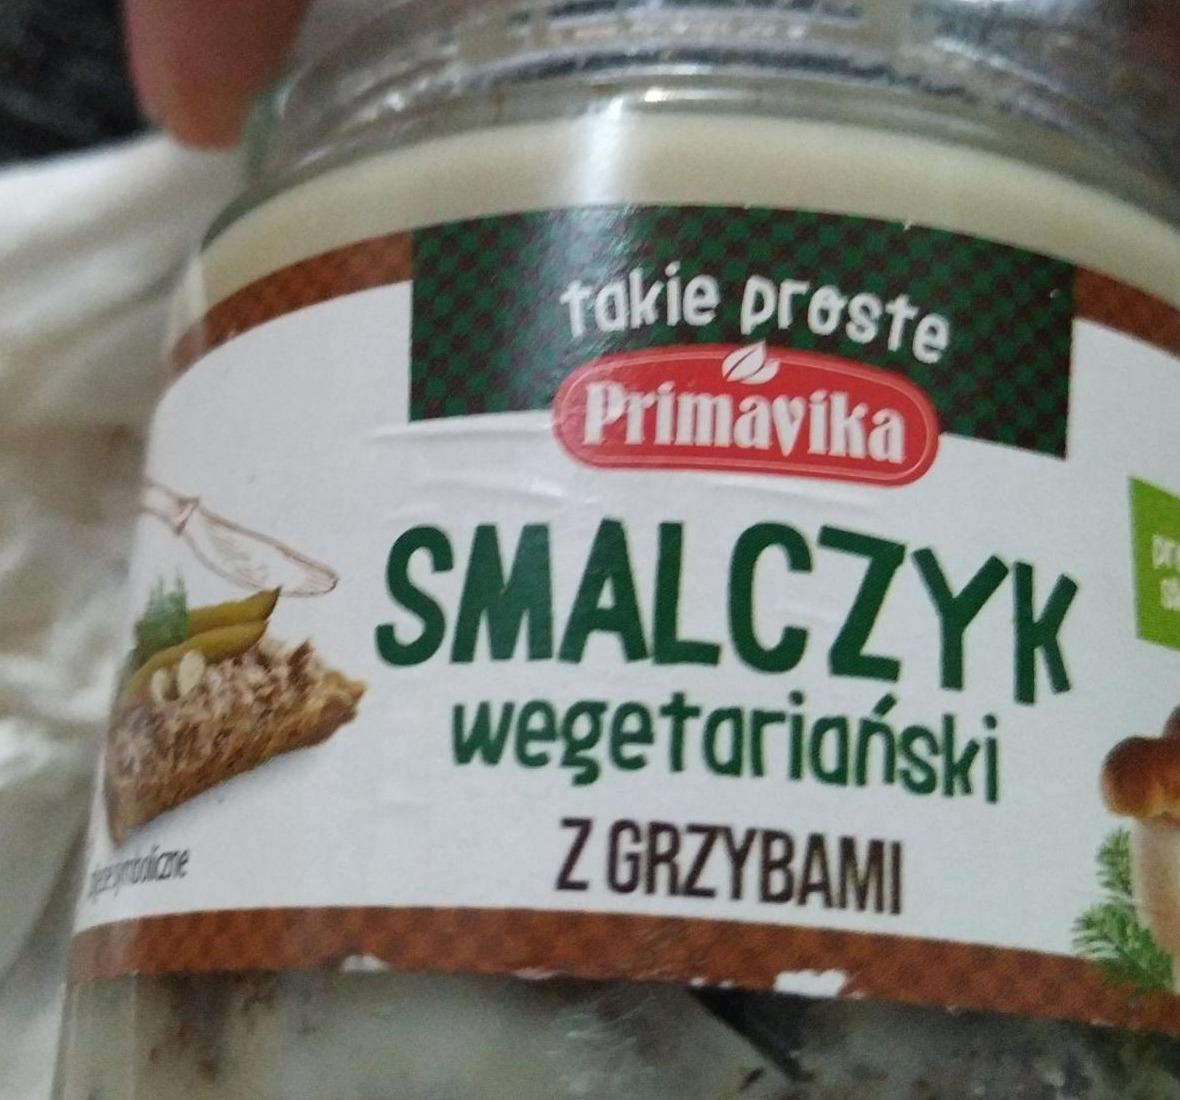 Fotografie - Smalczyk wegetariański z grzybami Primavika